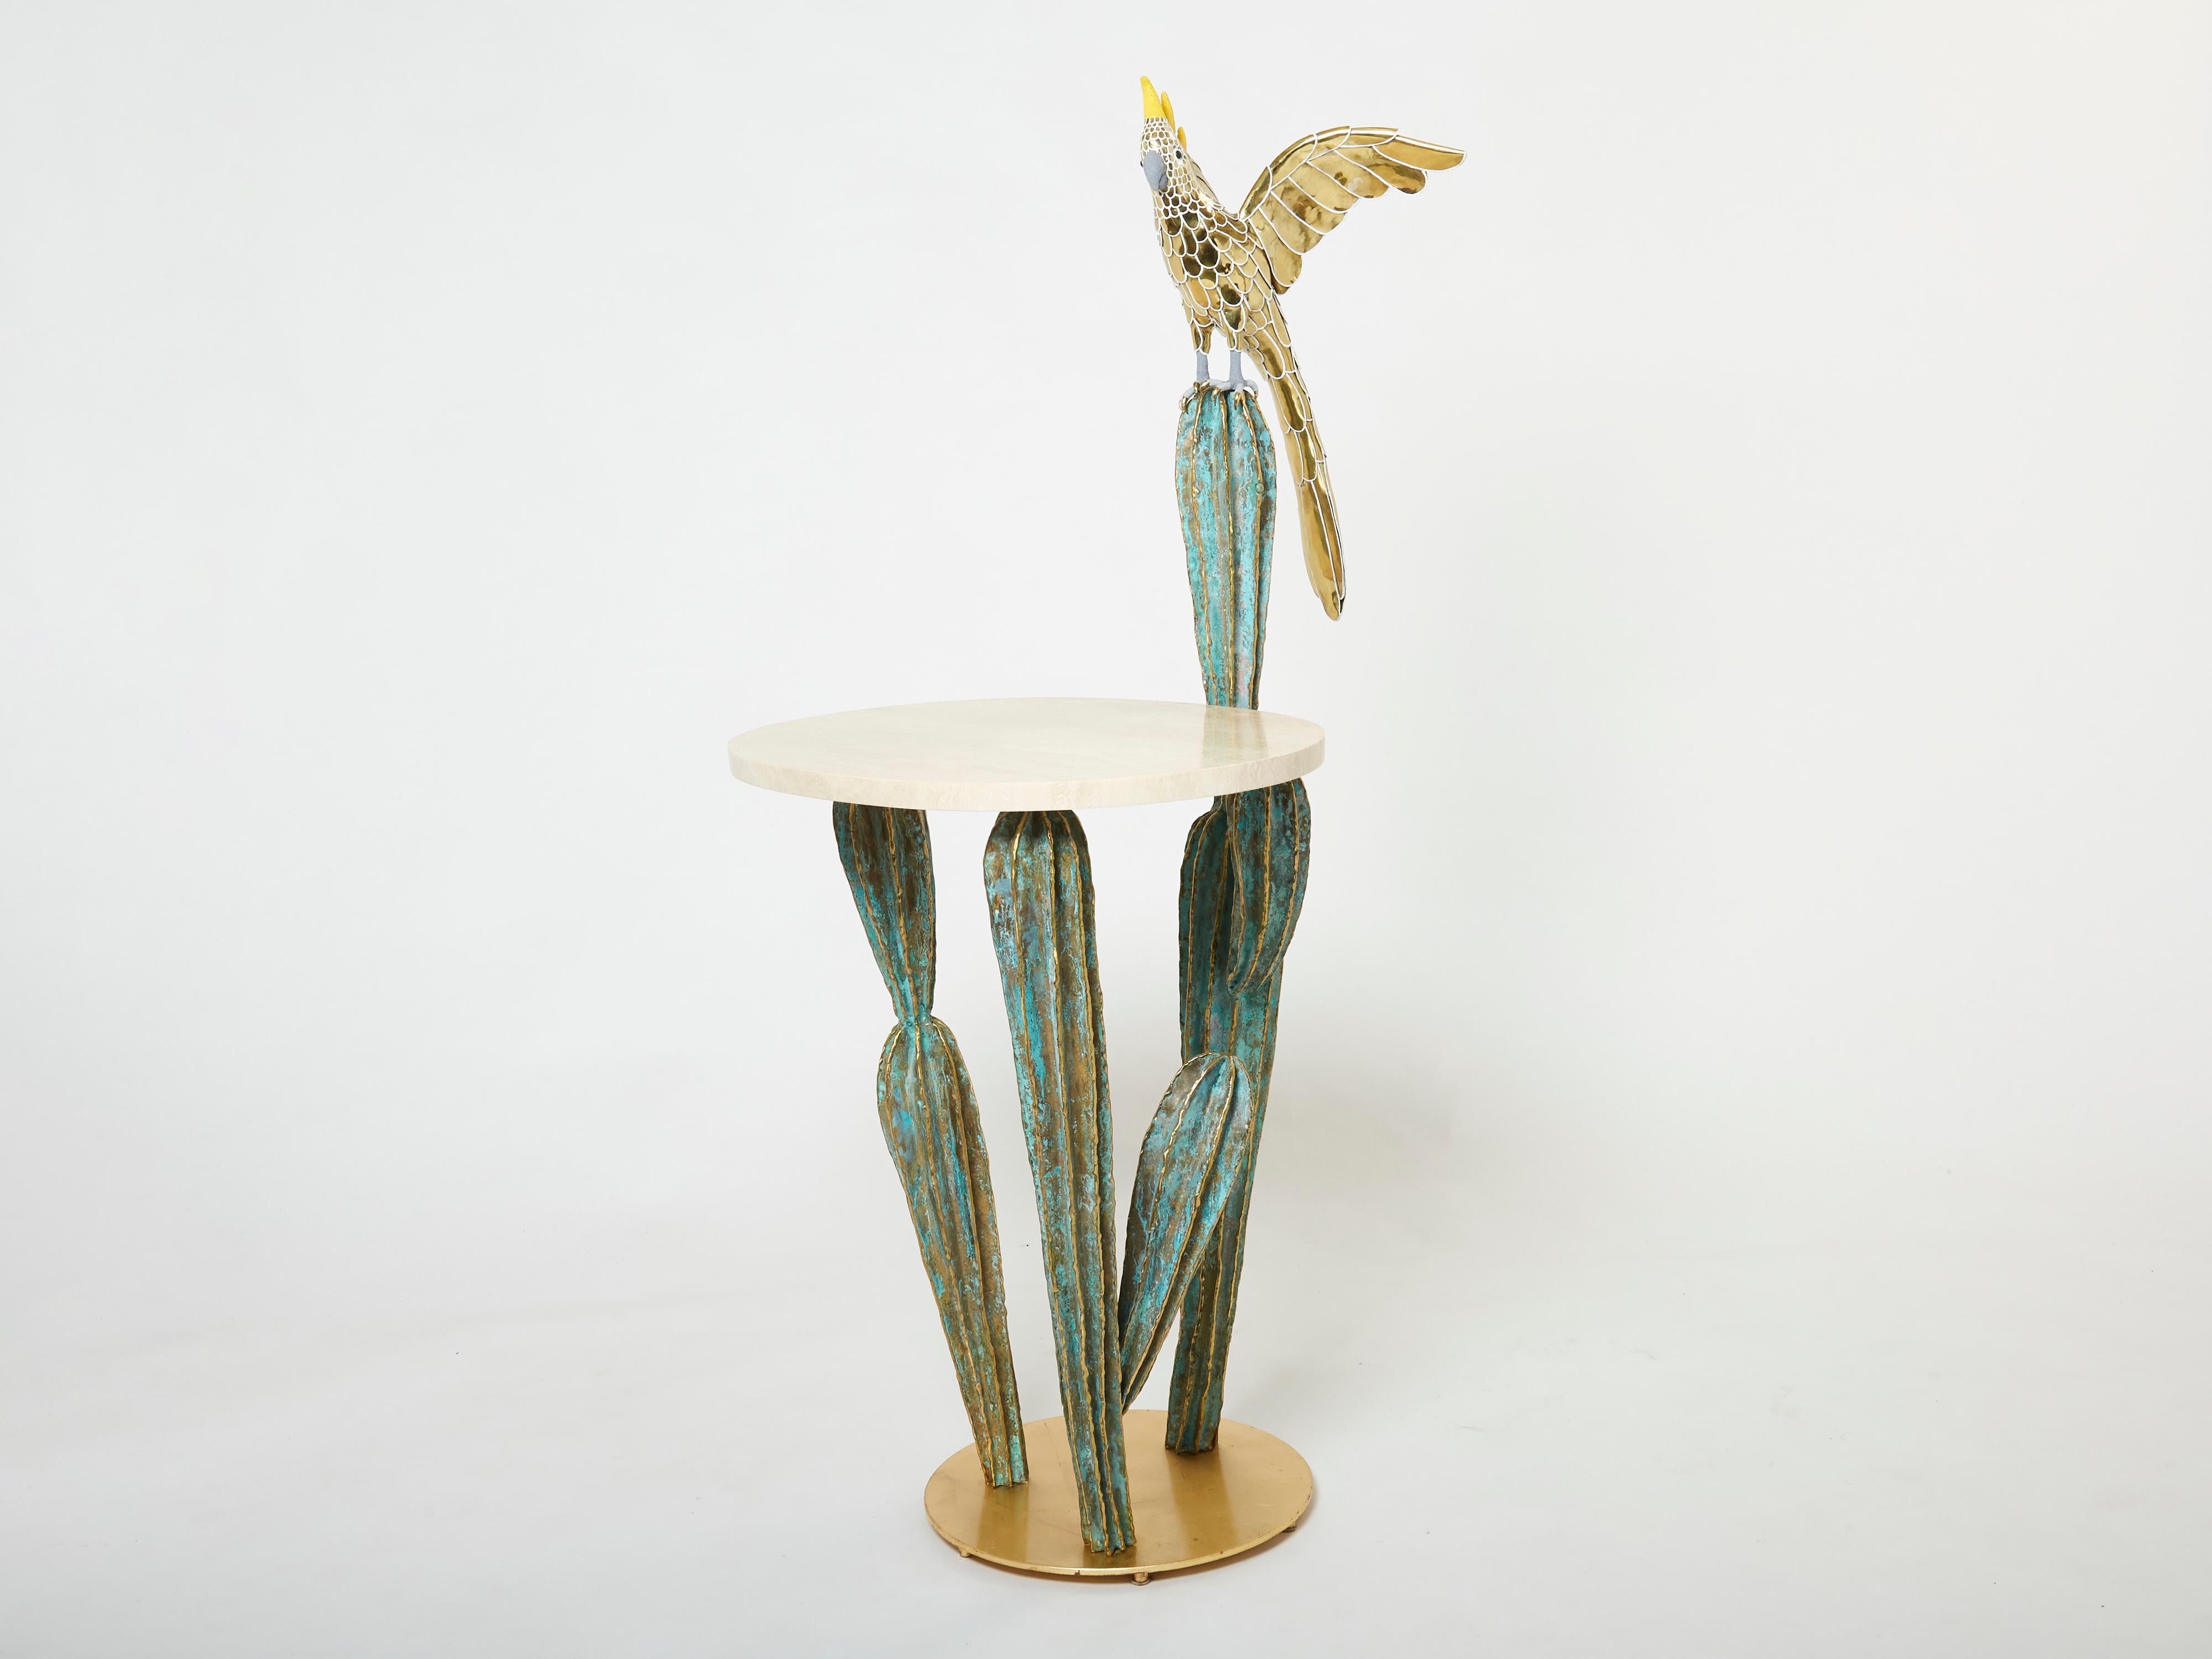 Dieser einzigartige Konsolentisch mit Kaktus und Papagei, signiert von Alain Chervet, ist aus massivem, vergoldetem und oxidiertem Messing gefertigt und auf 1989 datiert. Er hat eine ovale, glatte Travertinplatte. Der Konsolensockel ist aus